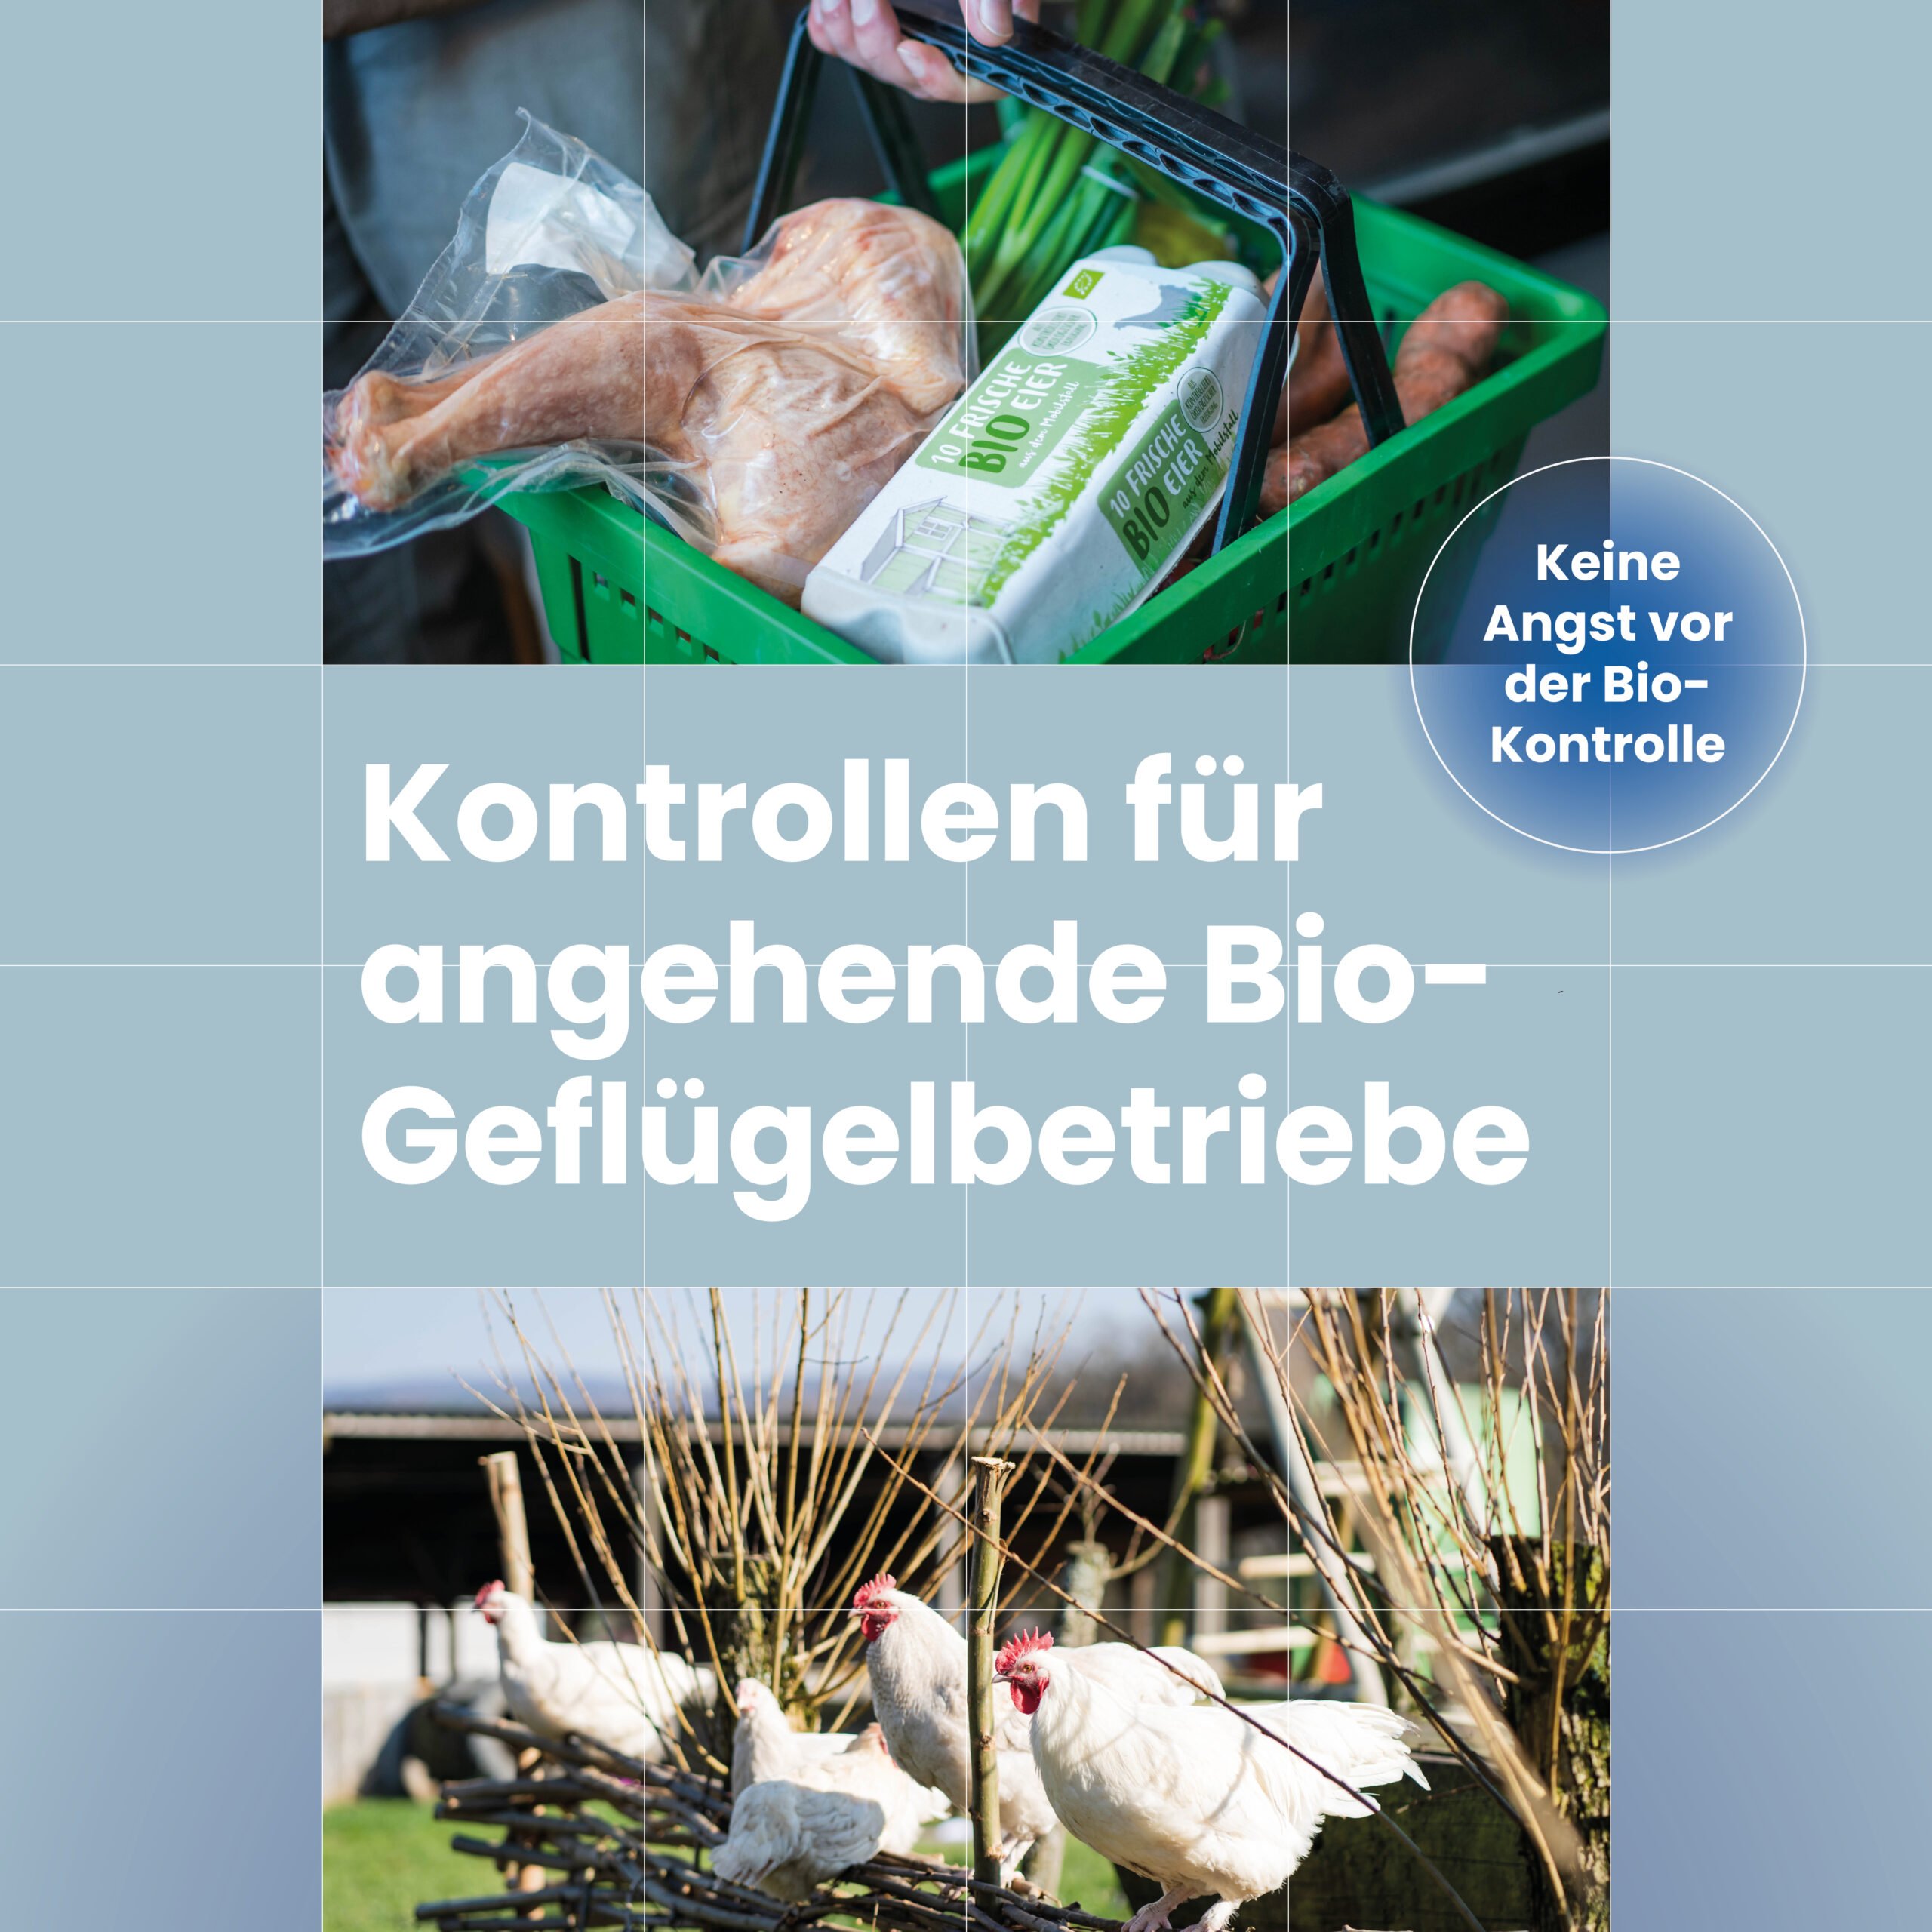 Im Fokus: Kontrollen für angehende Bio-Geflügelbetriebe